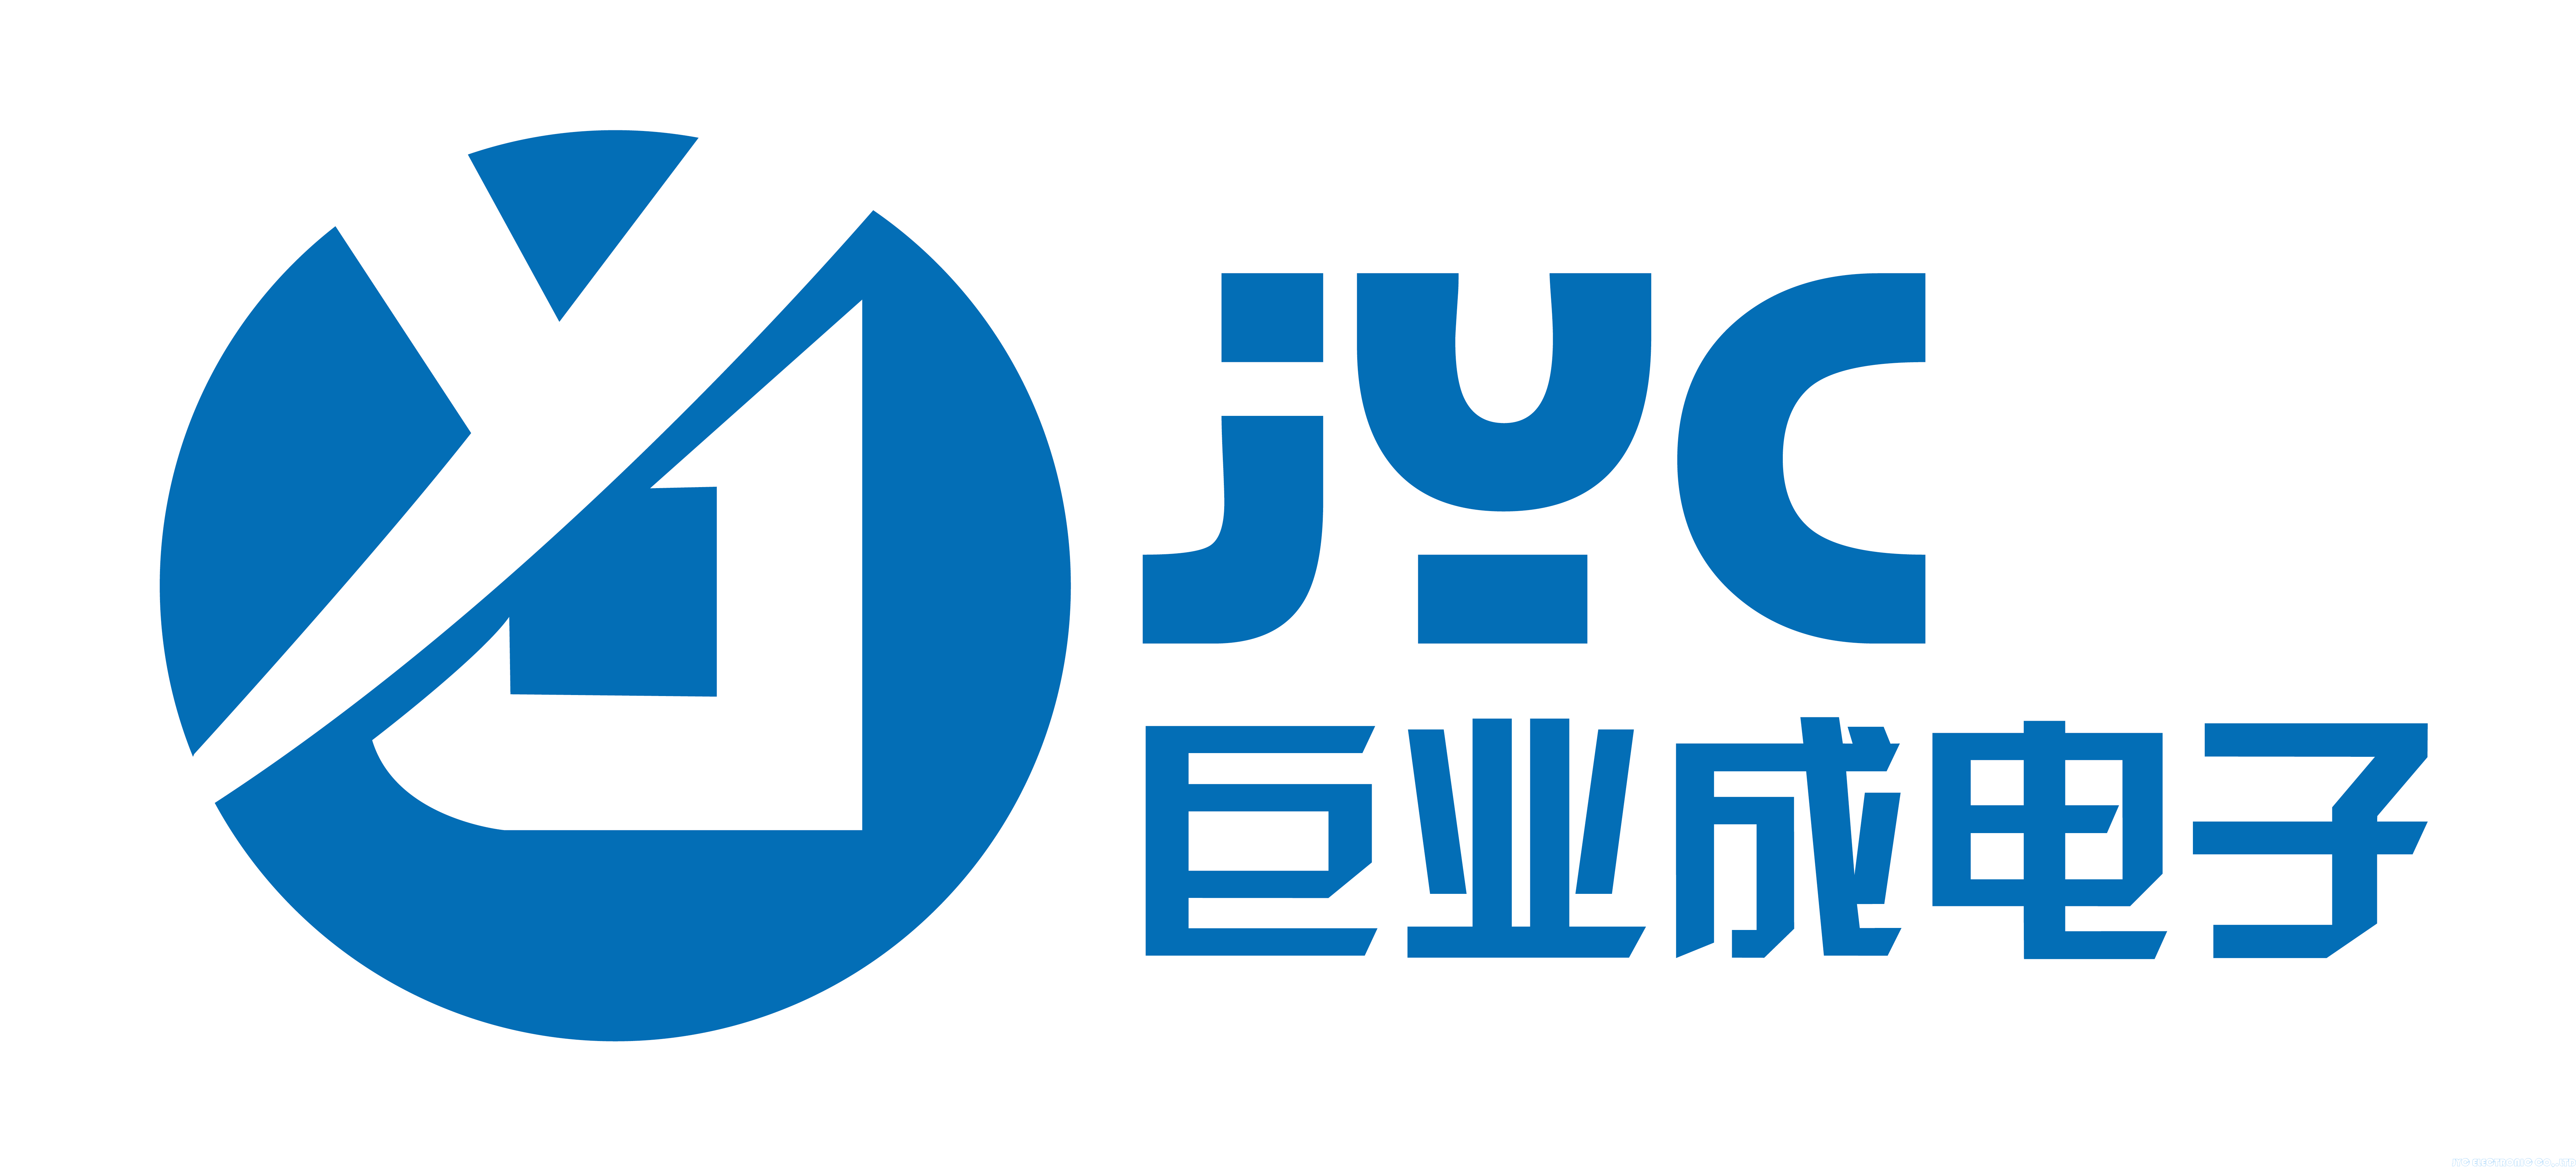 www.jyc-fiber.net